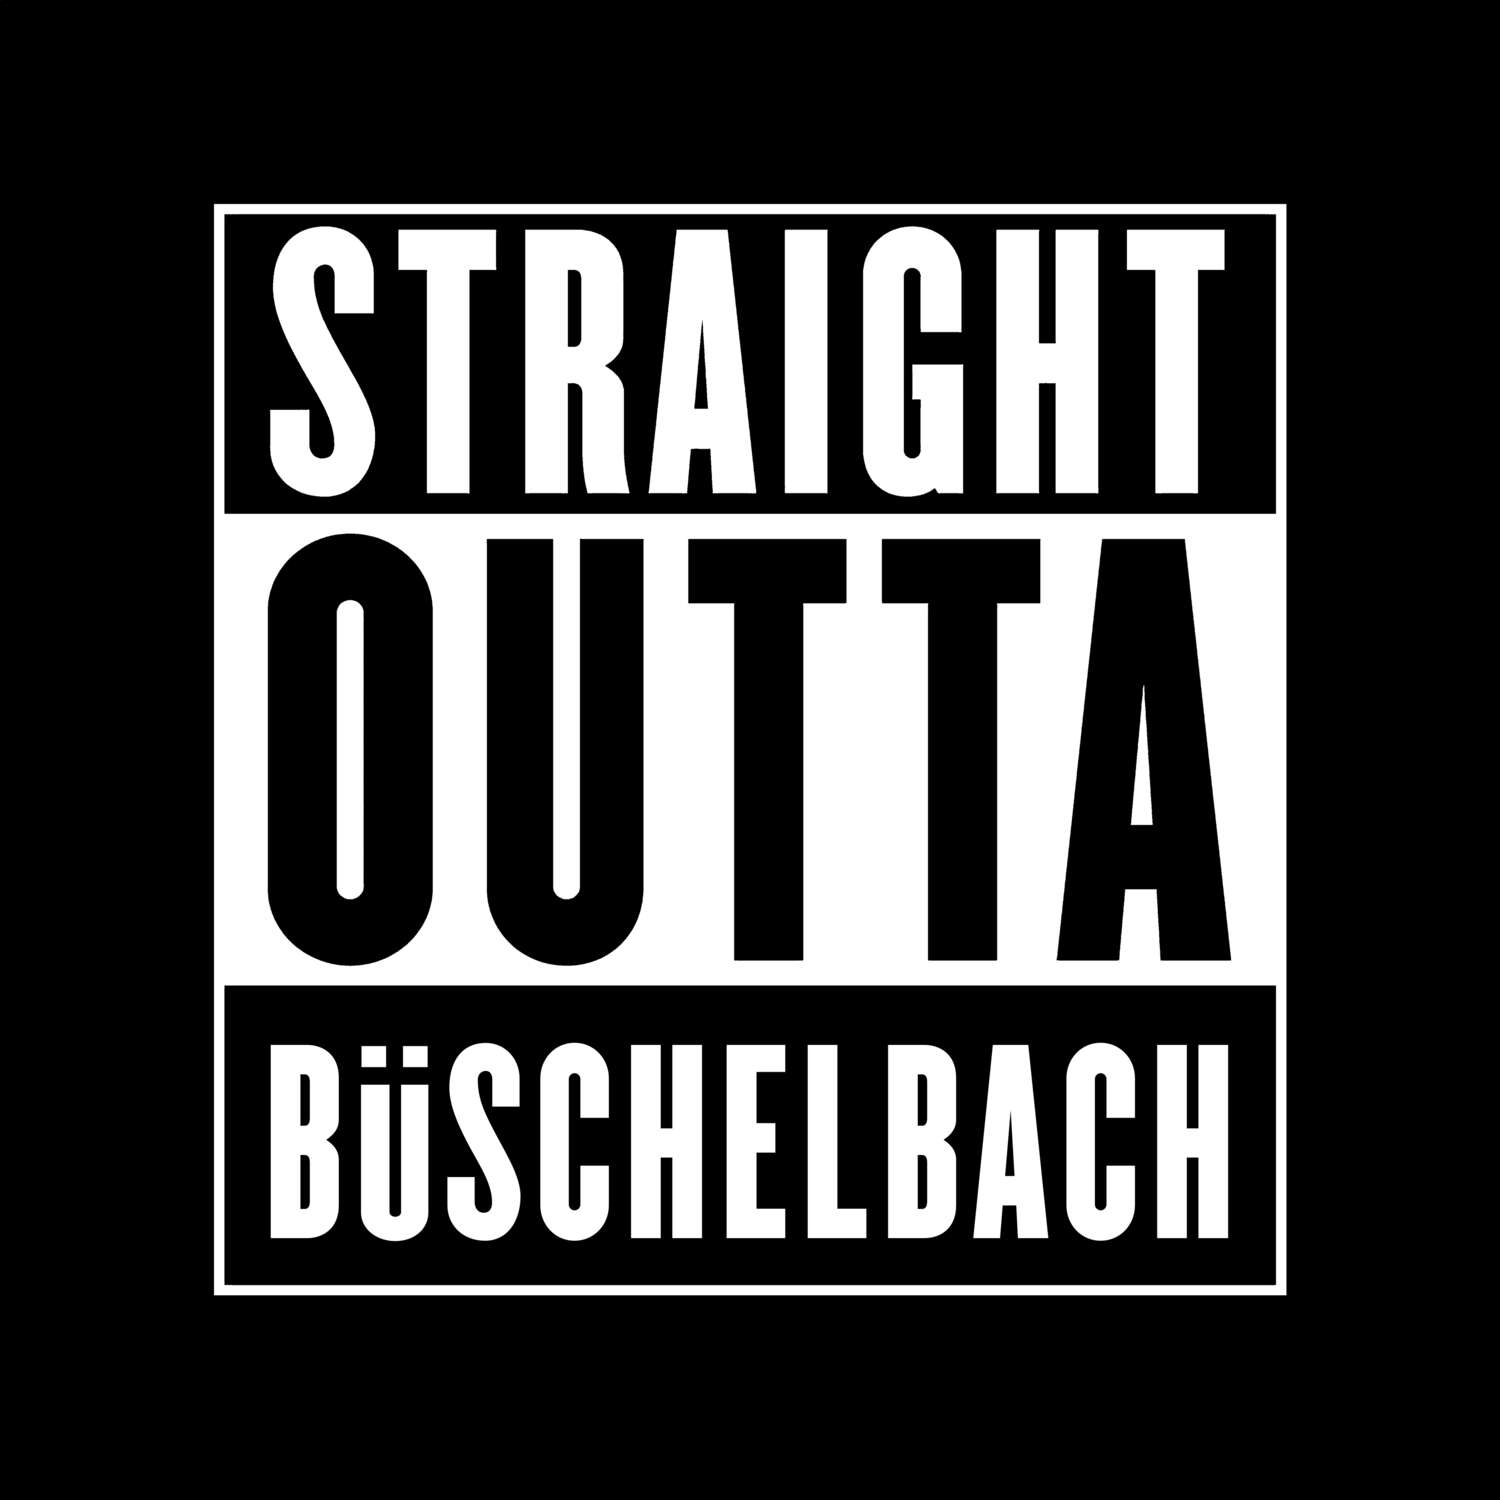 Büschelbach T-Shirt »Straight Outta«